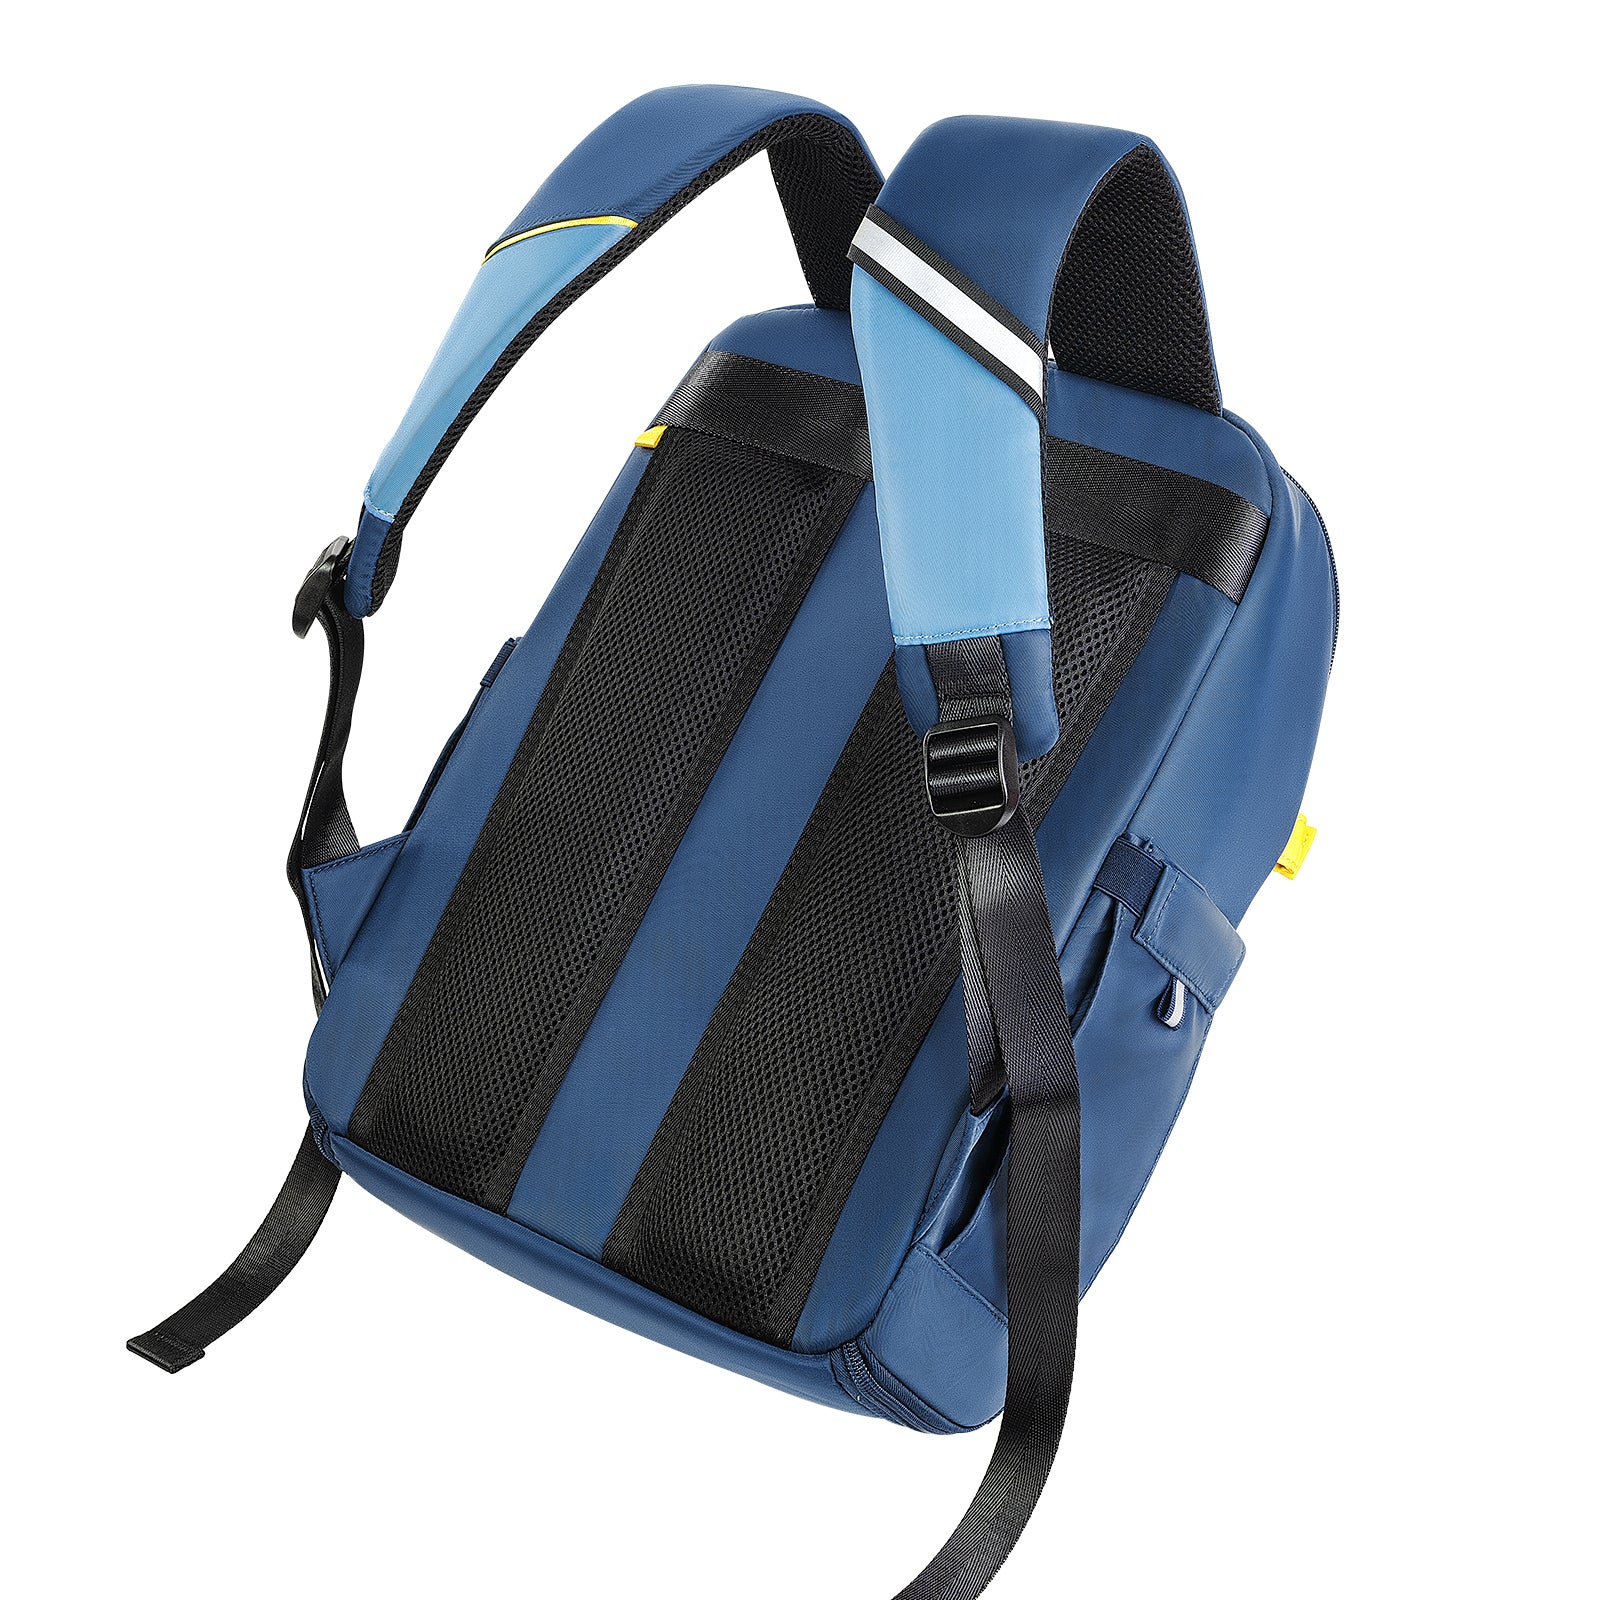 Divoom Backpack-S Pixel Art LED Backpack